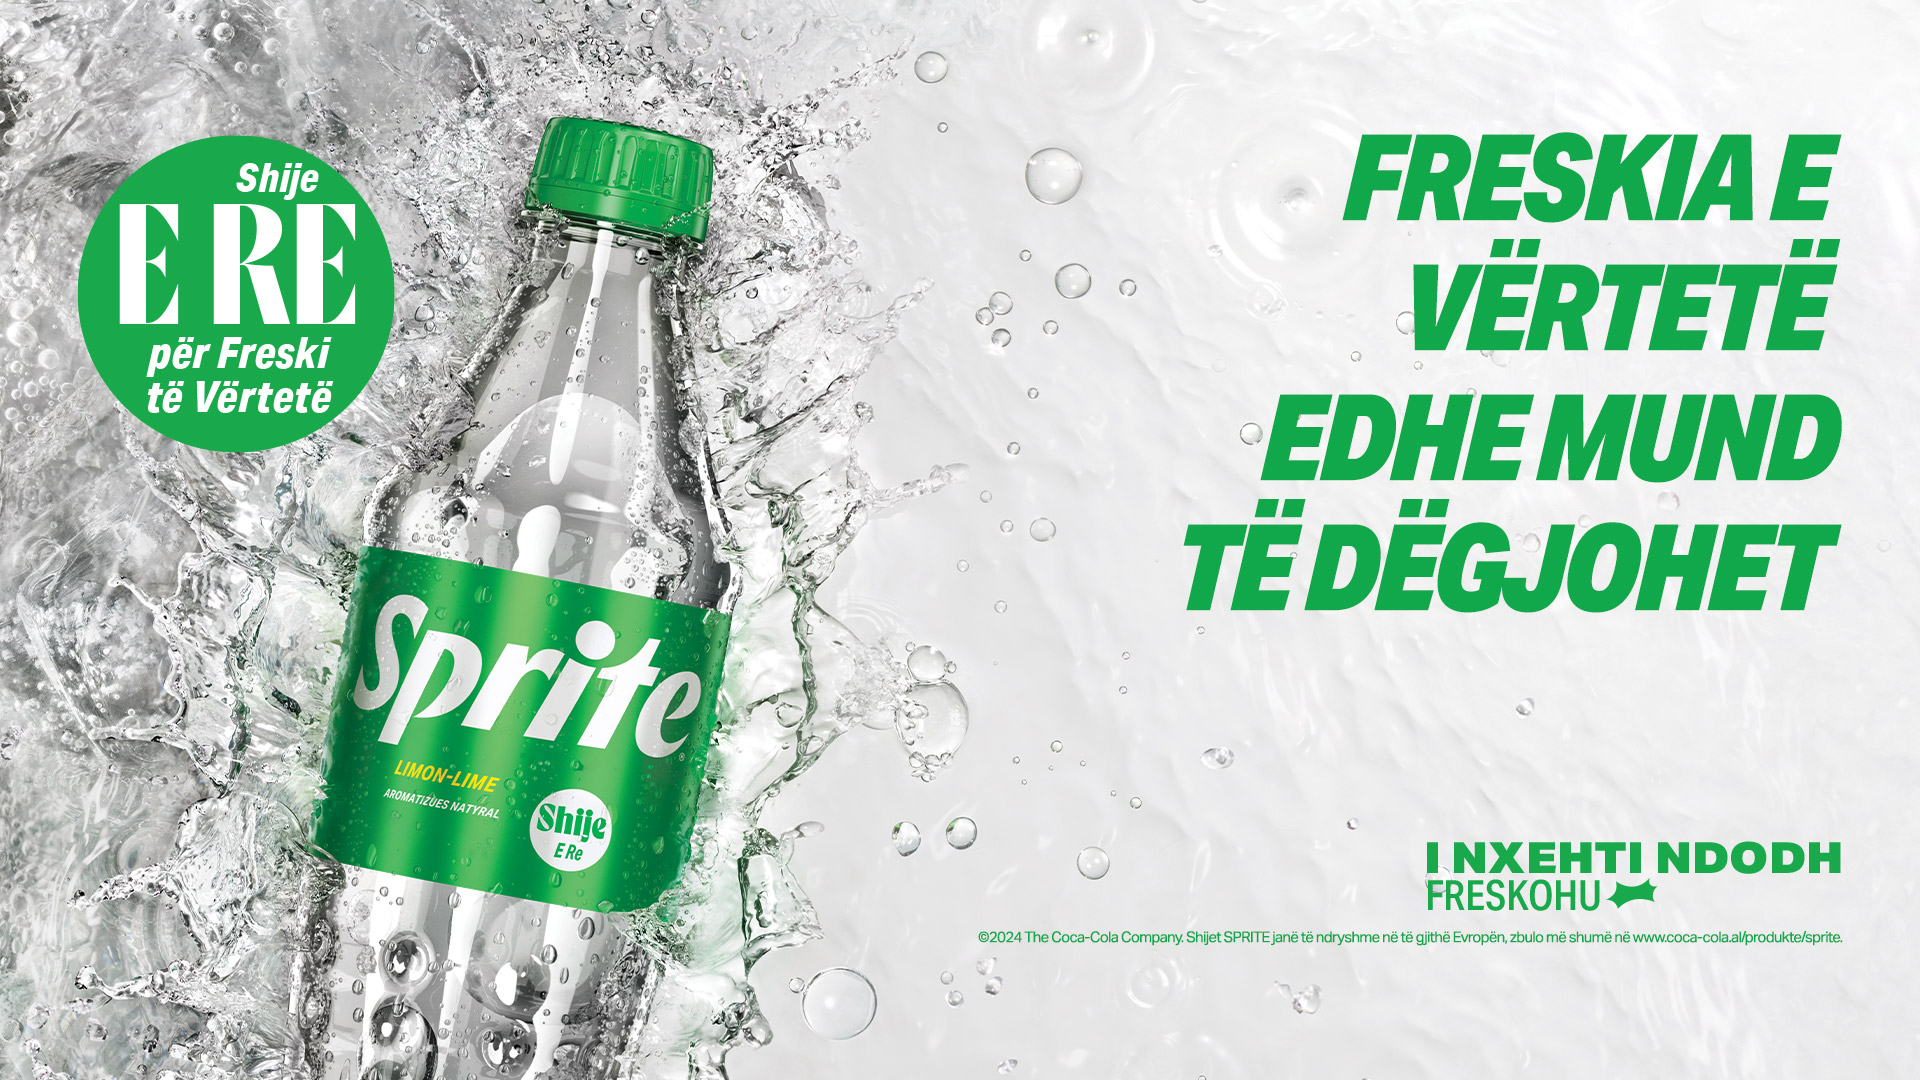 Një sfond i gjelbër me një pije të freskët Sprite në një shishe të re, me tekstin "E njëjta freski në shishe të re."